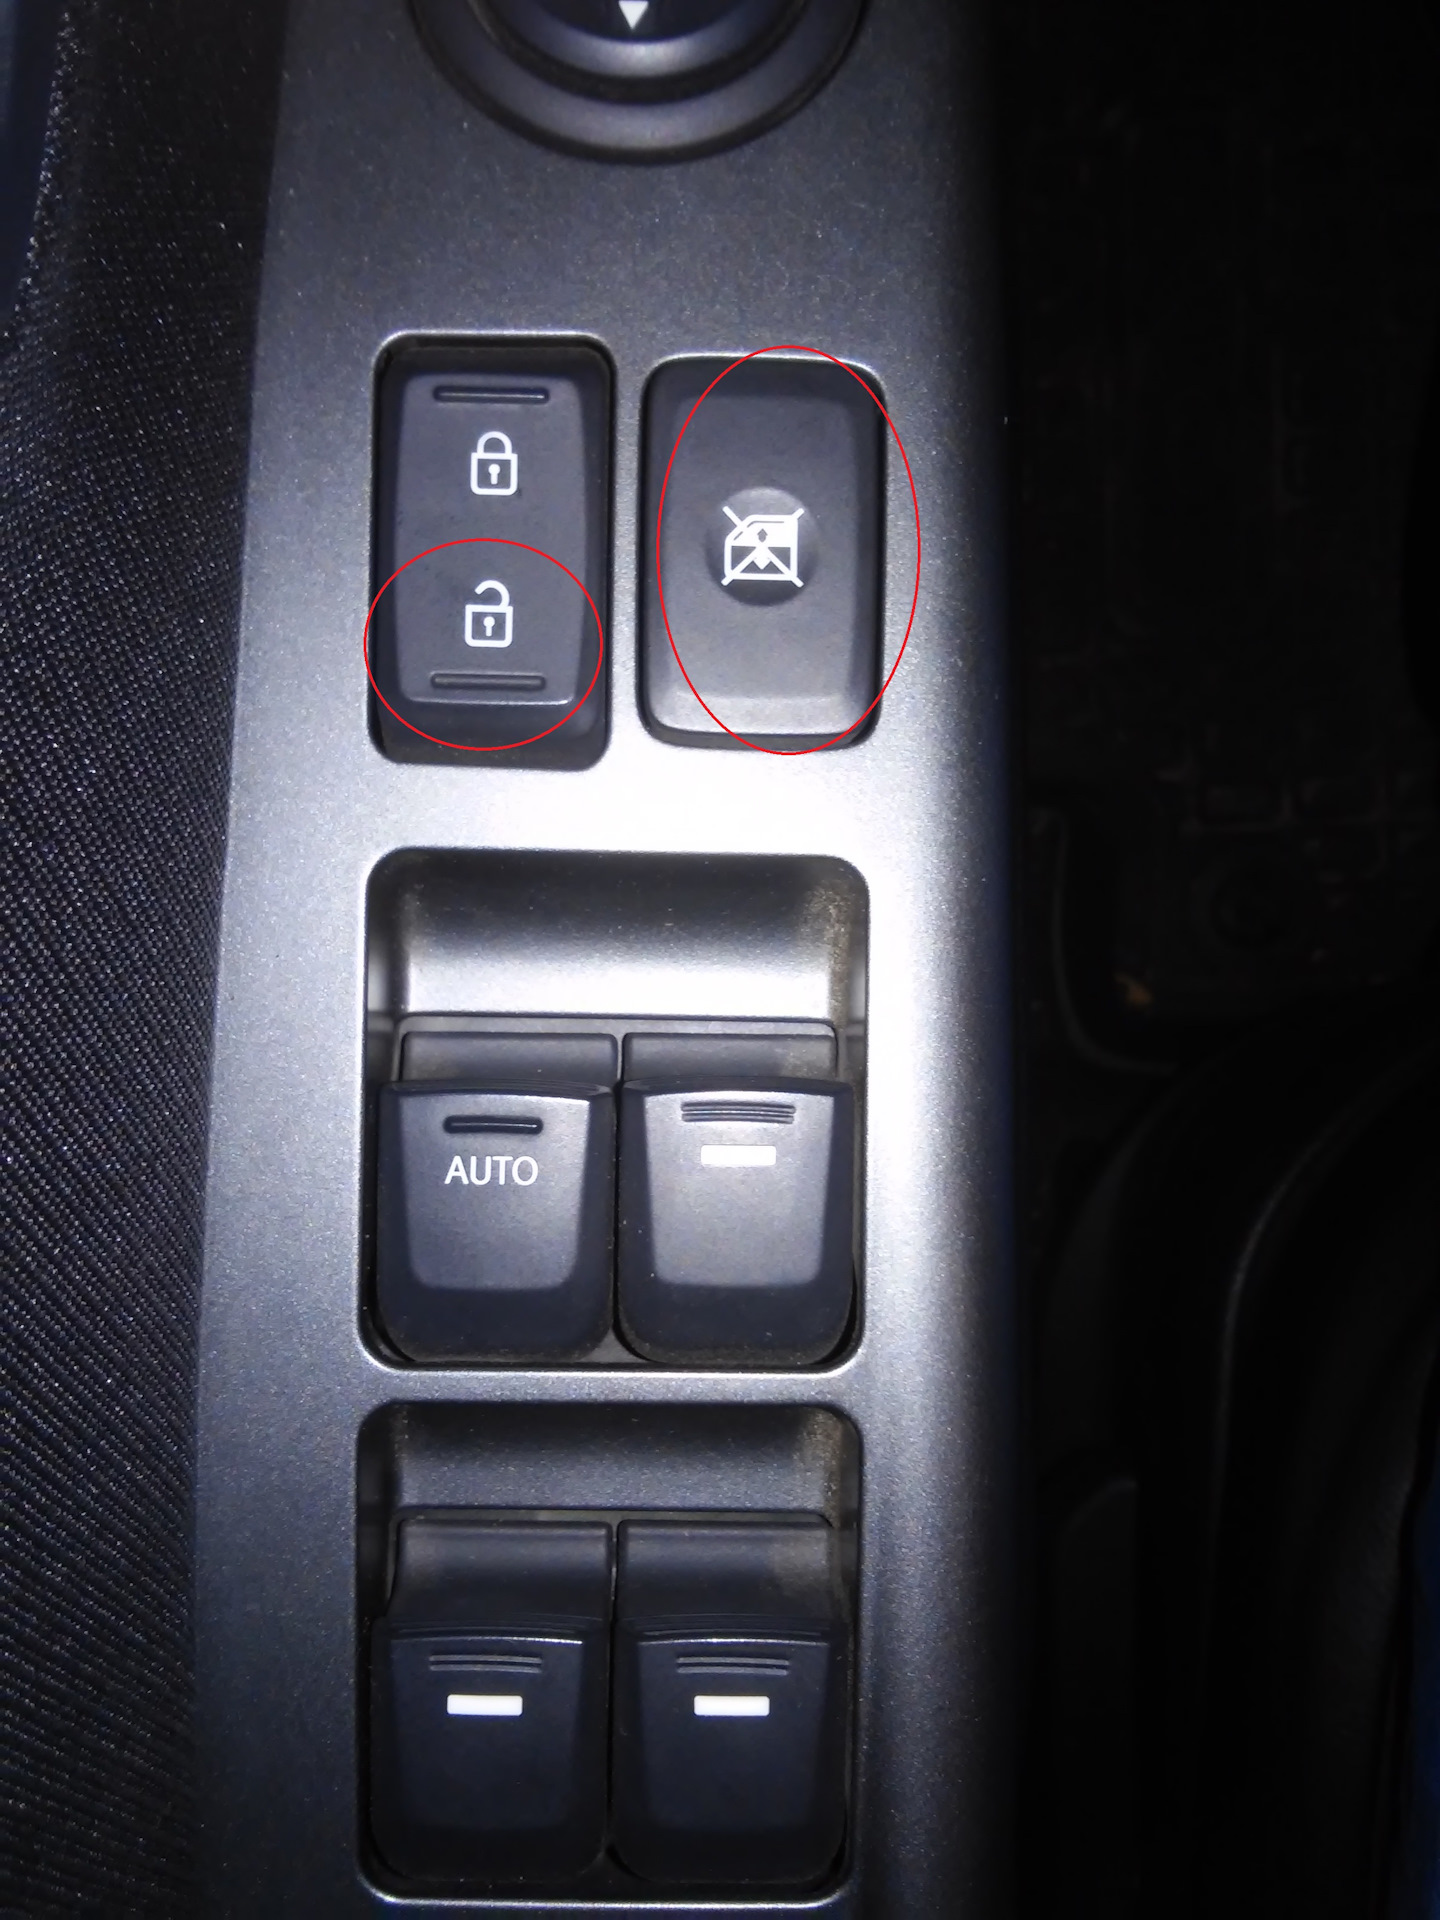 Подсветка кнопок киа. Подсветка кнопок стеклоподъёмников Mazda CX-7. Кнопки подсветки Кайрон 2010. Блок кнопок на Киа Рио 3 на панель. Подсветка кнопок УАЗ Патриот.